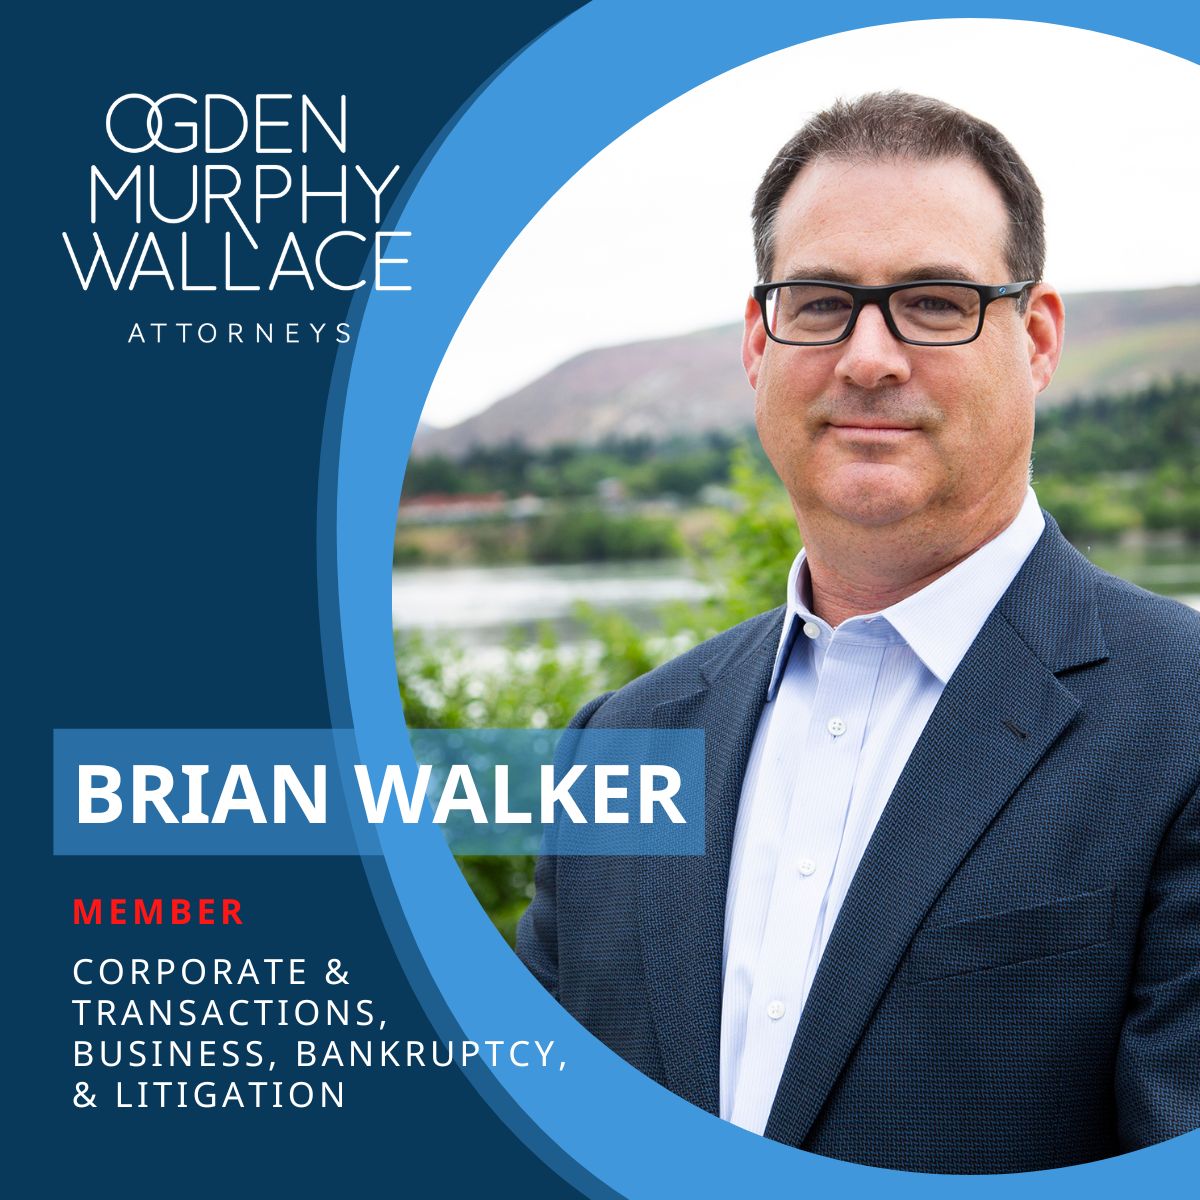 Ogden Murphy Wallace on LinkedIn: Brian Walker is a seasoned member of ...